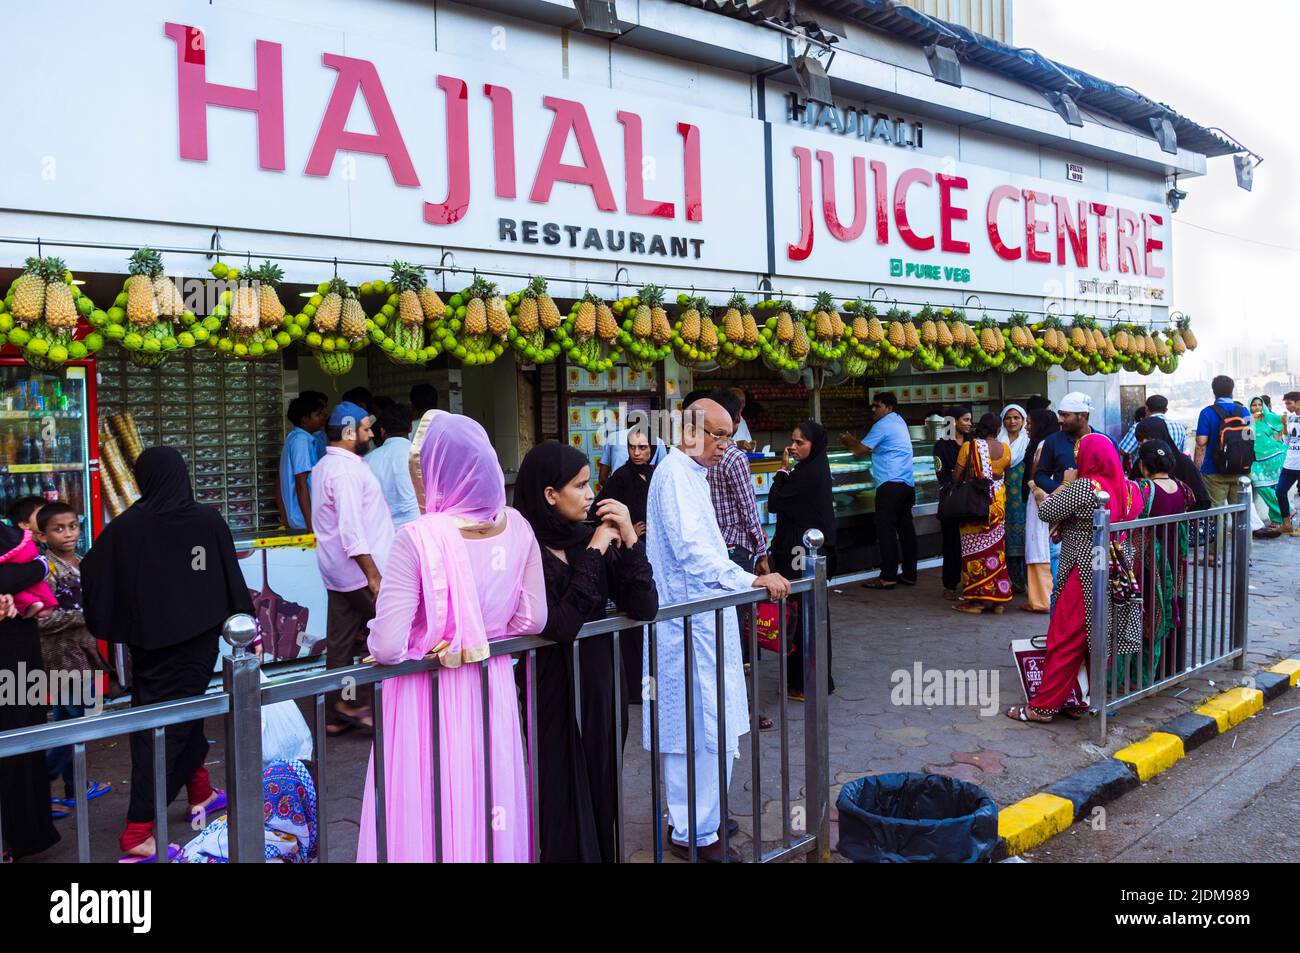 Mumbai, Maharashtra, India : La gente se encuentra en la tienda del centro de zumos Hajiali, junto al acceso al Haji Ali Dargah y el lugar de peregrinación. Foto de stock